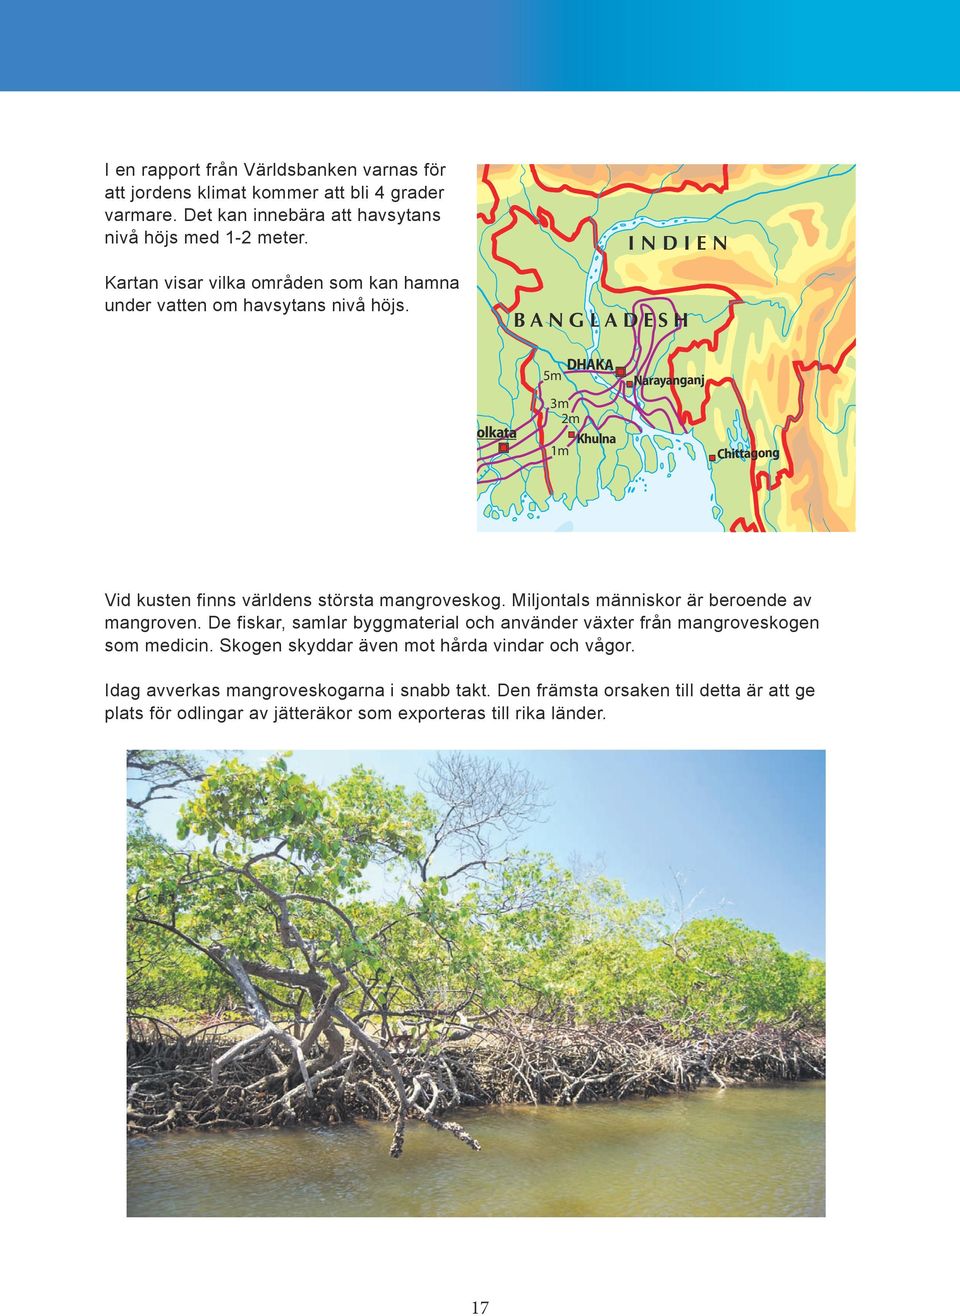 INDIEN BANGLADESH Kolkata 5m 3m 2m 1m DHAKA Khulna Narayanganj Chittagong Vid kusten finns världens största mangroveskog. Miljontals människor är beroende av mangroven.